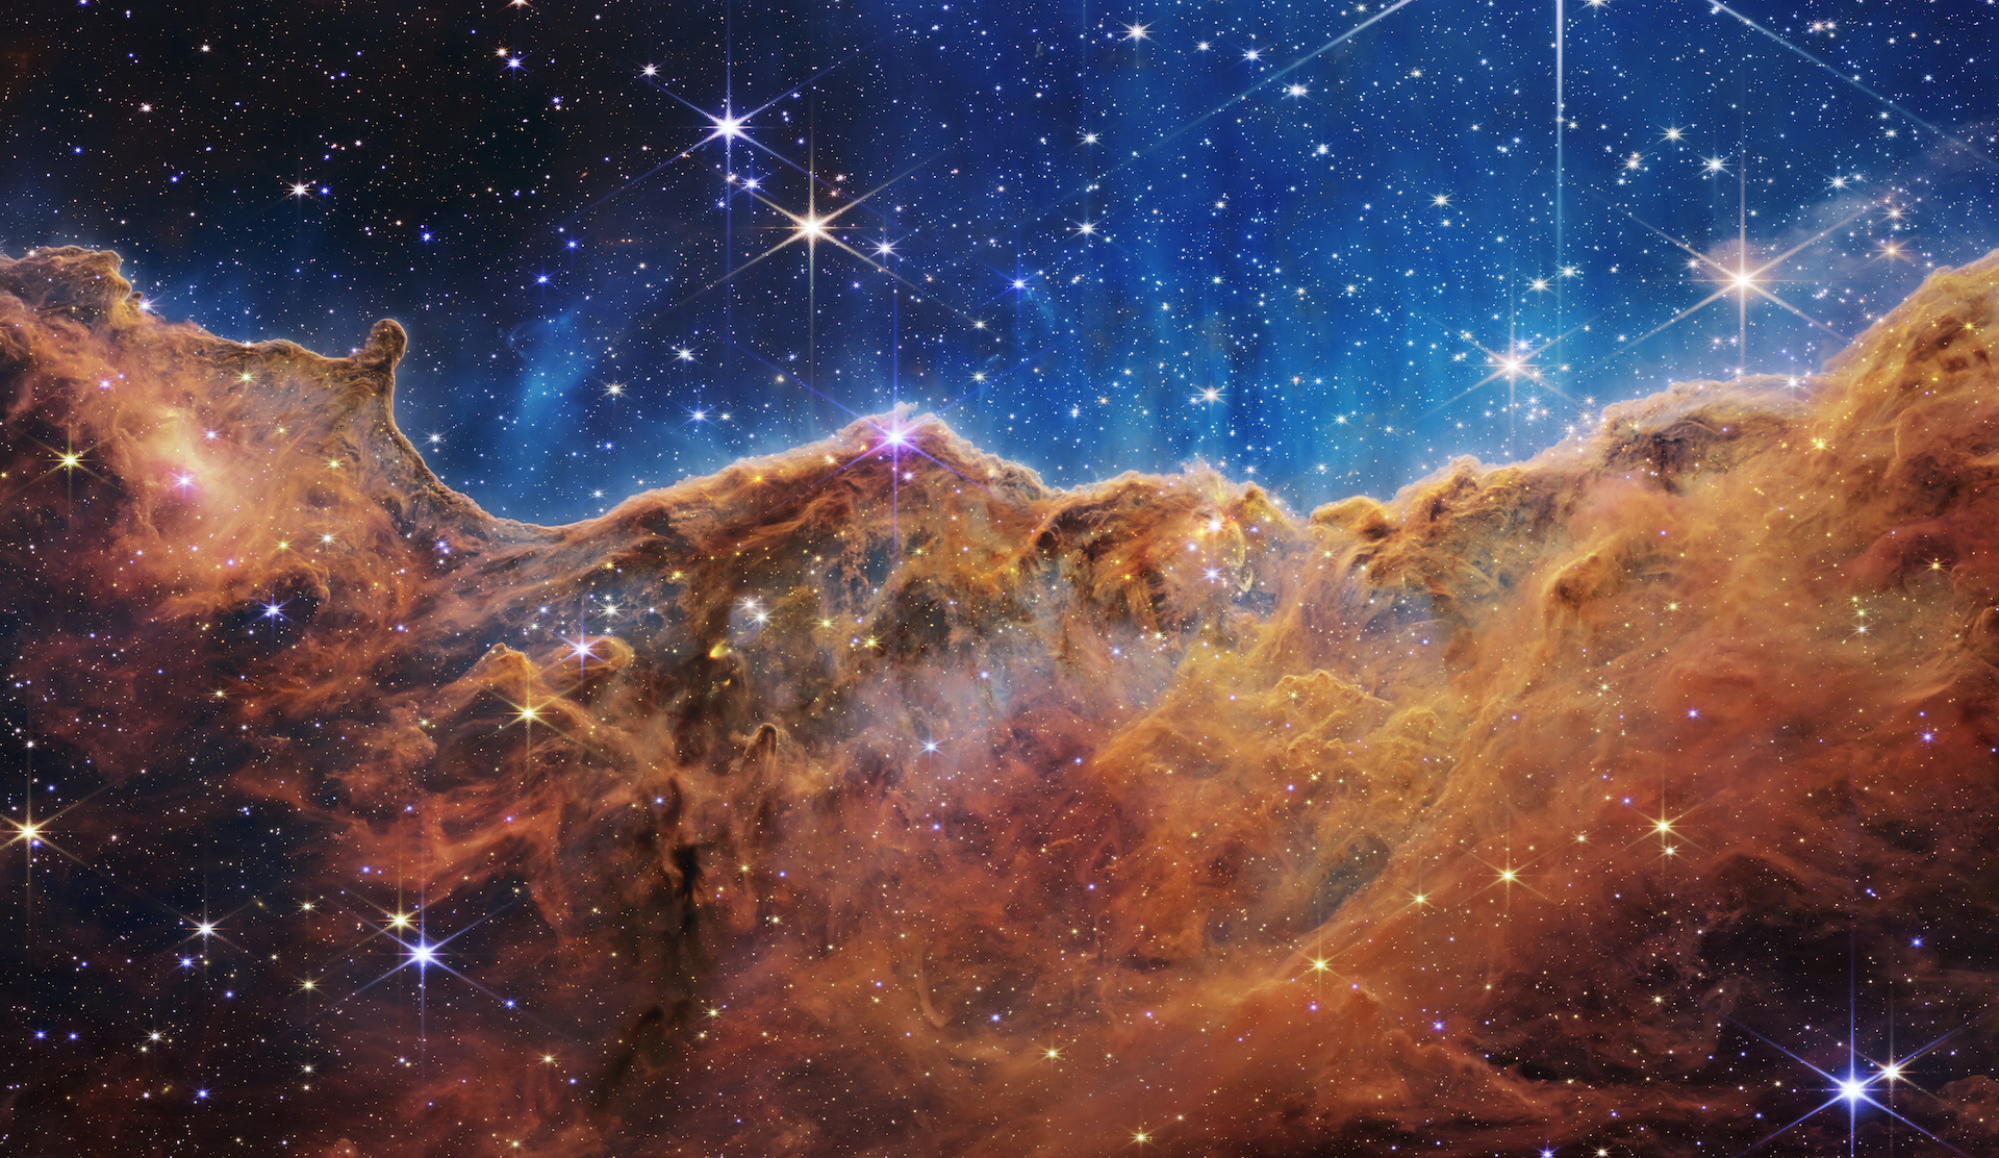 Nuages ​​de poussière et de gaz de la nébuleuse Carina, où se forment les étoiles, photographiés par le télescope James Webb.